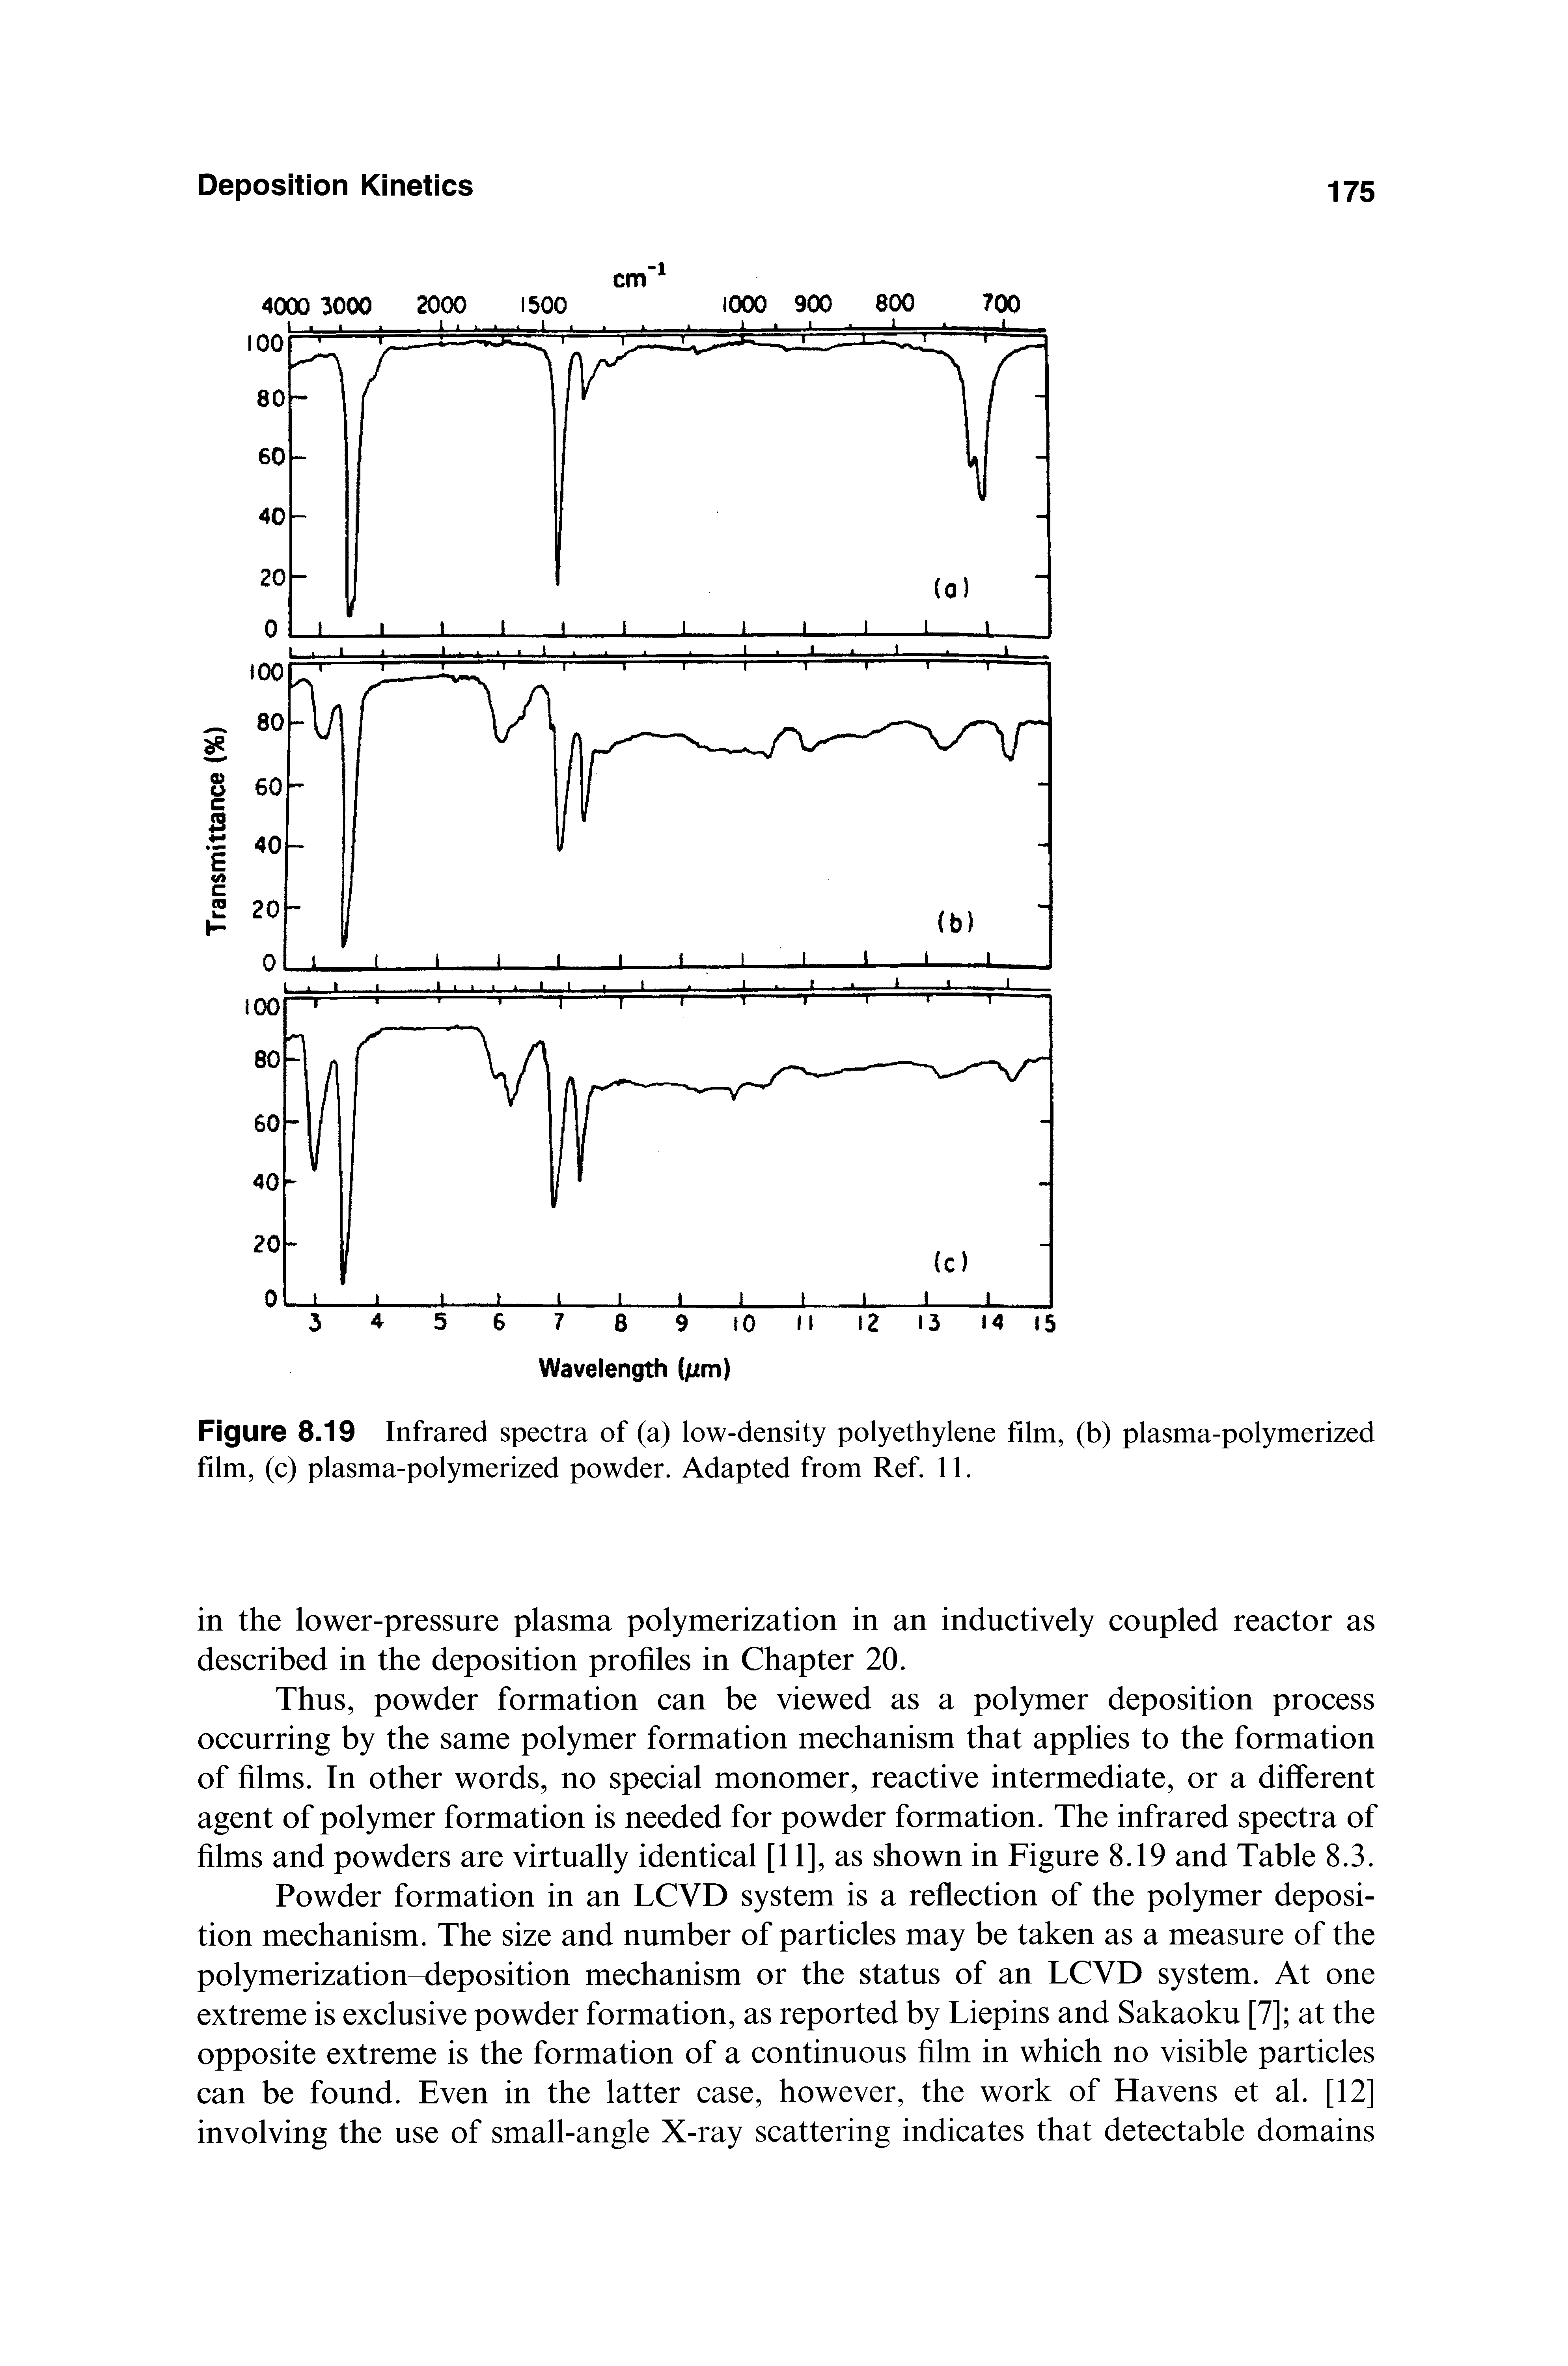 Figure 8.19 Infrared spectra of (a) low-density polyethylene film, (b) plasma-polymerized film, (c) plasma-polymerized powder. Adapted from Ref. 11.